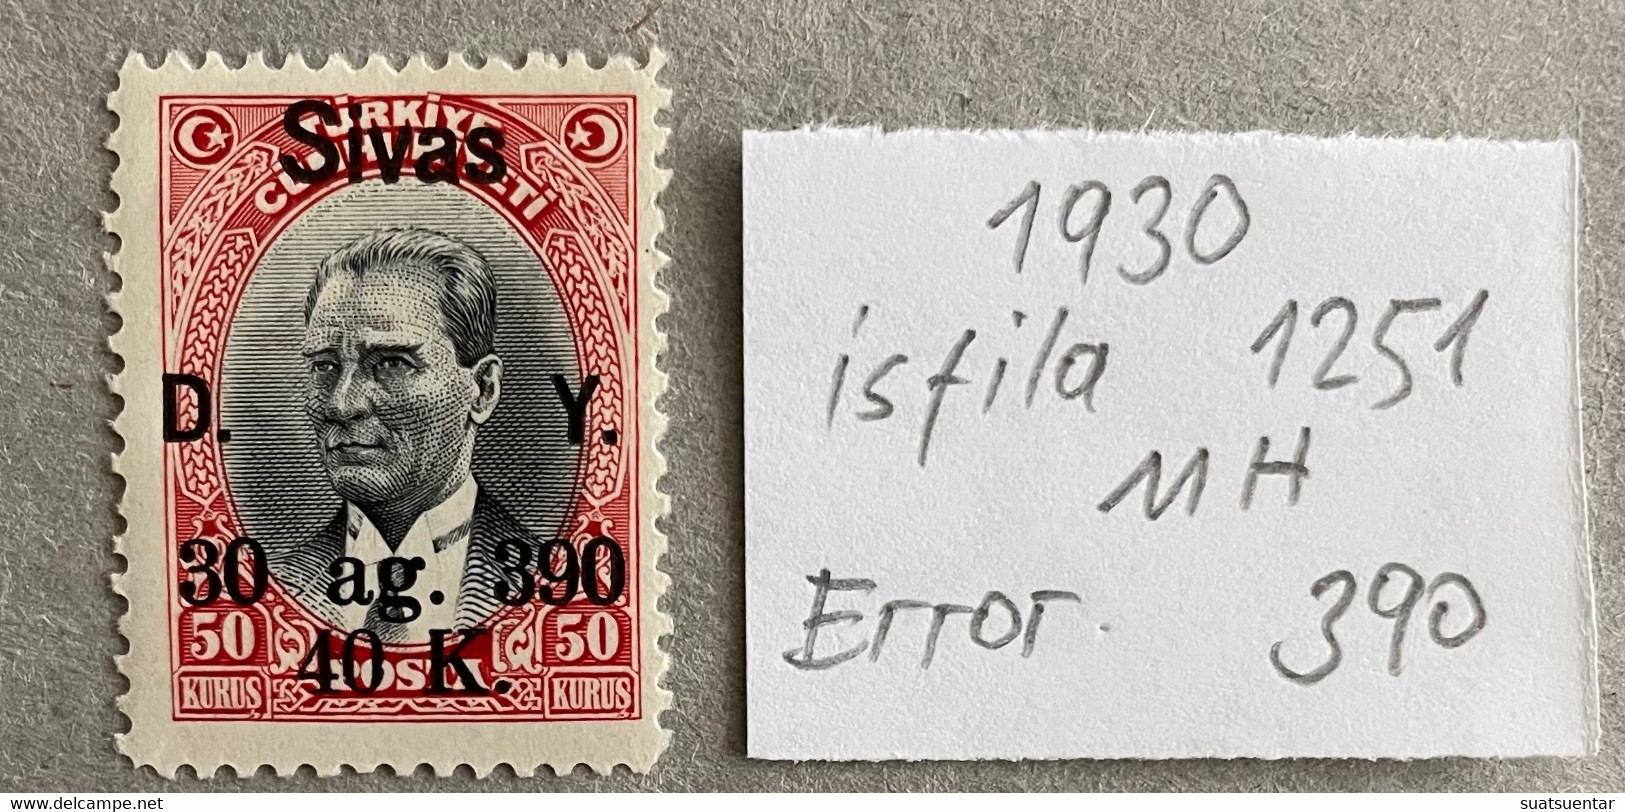 1930 Sivas-Ankara Railway Stamps Error   390 MH Isfila 1251 - Nuevos